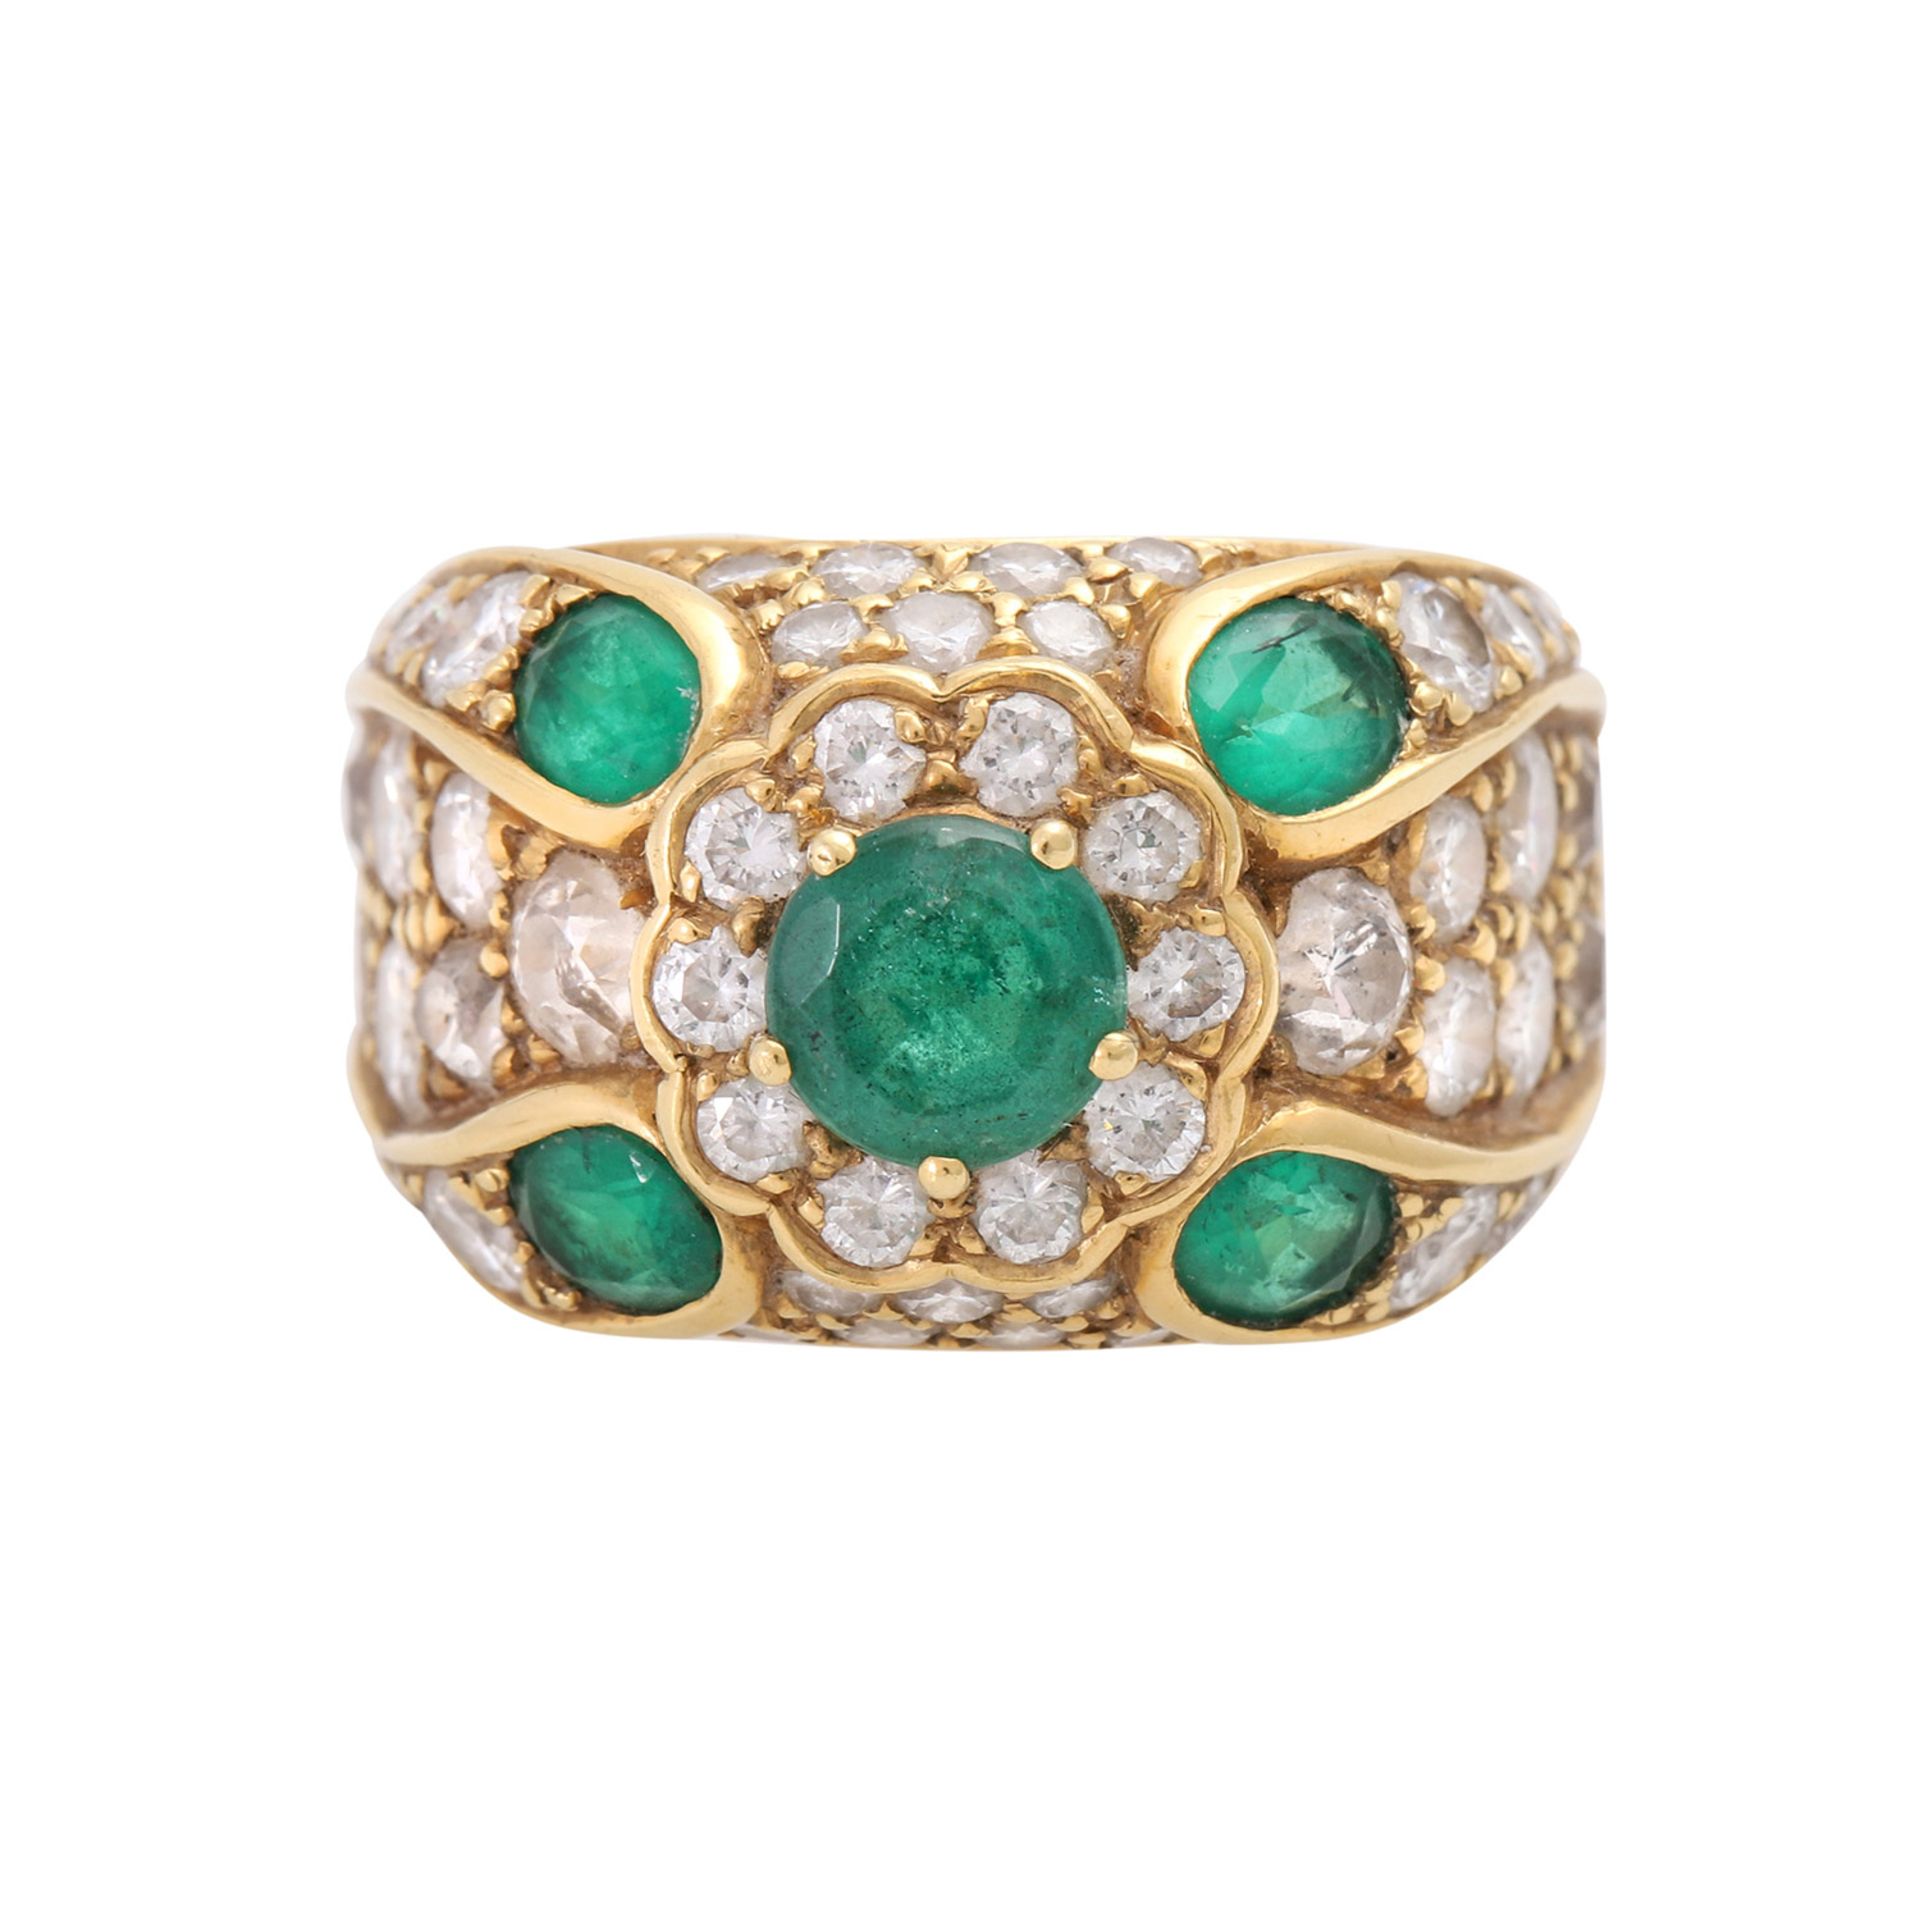 Damenring besetzt mit 5 Smaragde und Diamanten zus. ca. 2,0 cts, TW-W/ VSI- PIQUE.GG 18 K. Ringgröße